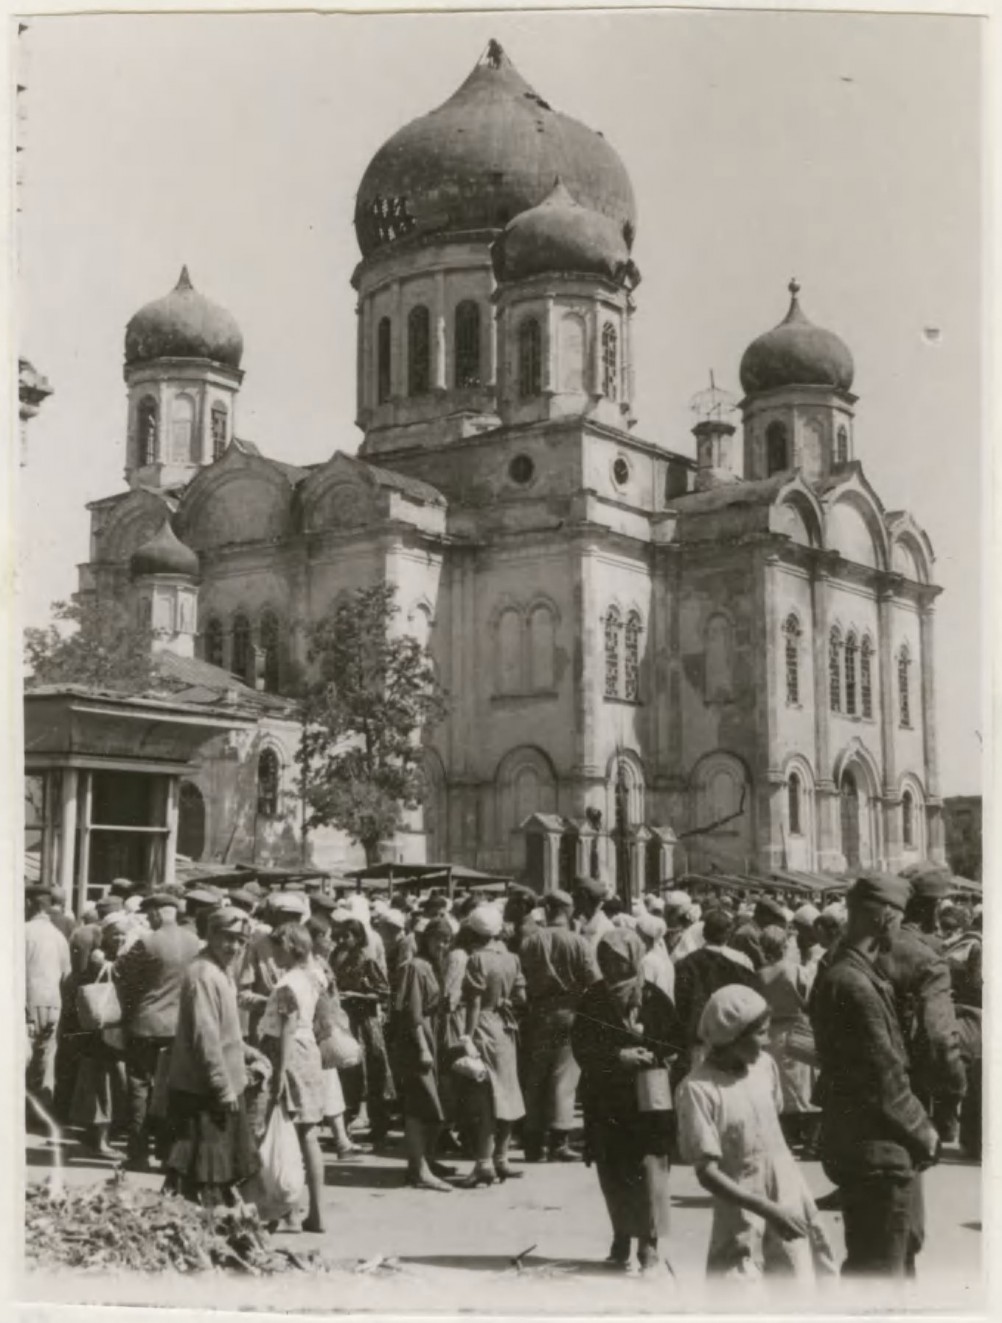 Фотографии Ростова-на-Дону и окрестностей периода августа 1942 г.